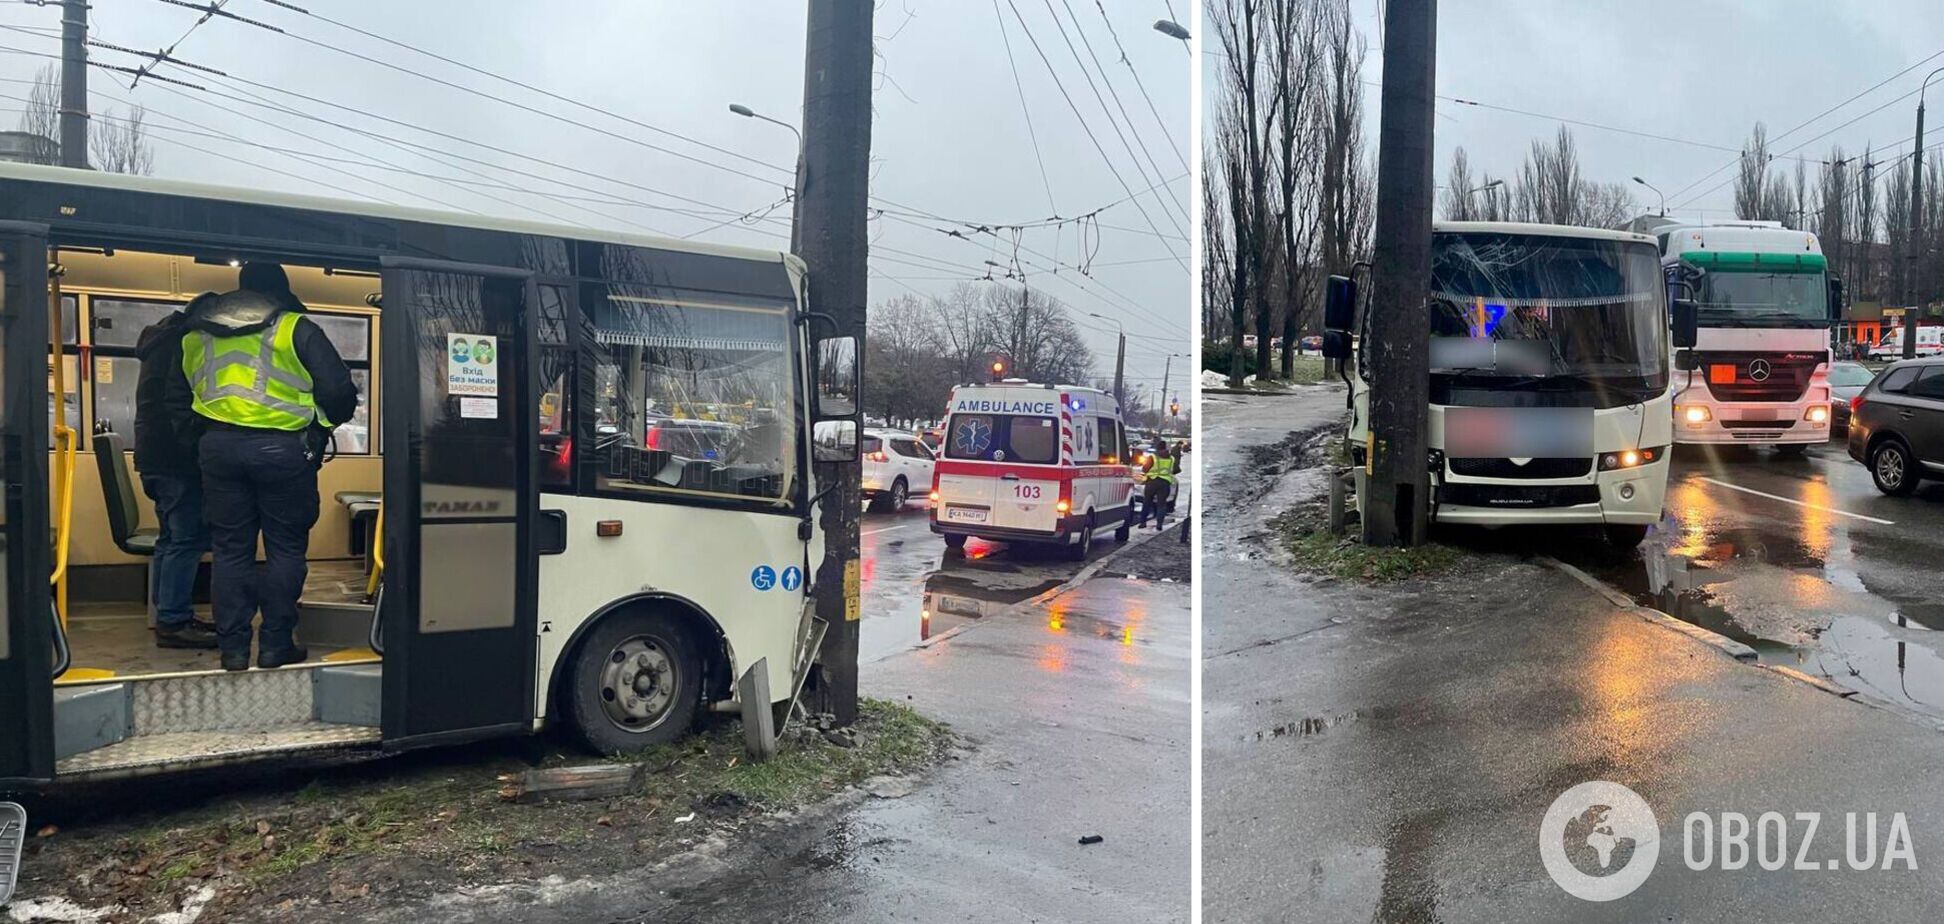 ДТП произошло в Подольском районе столицы